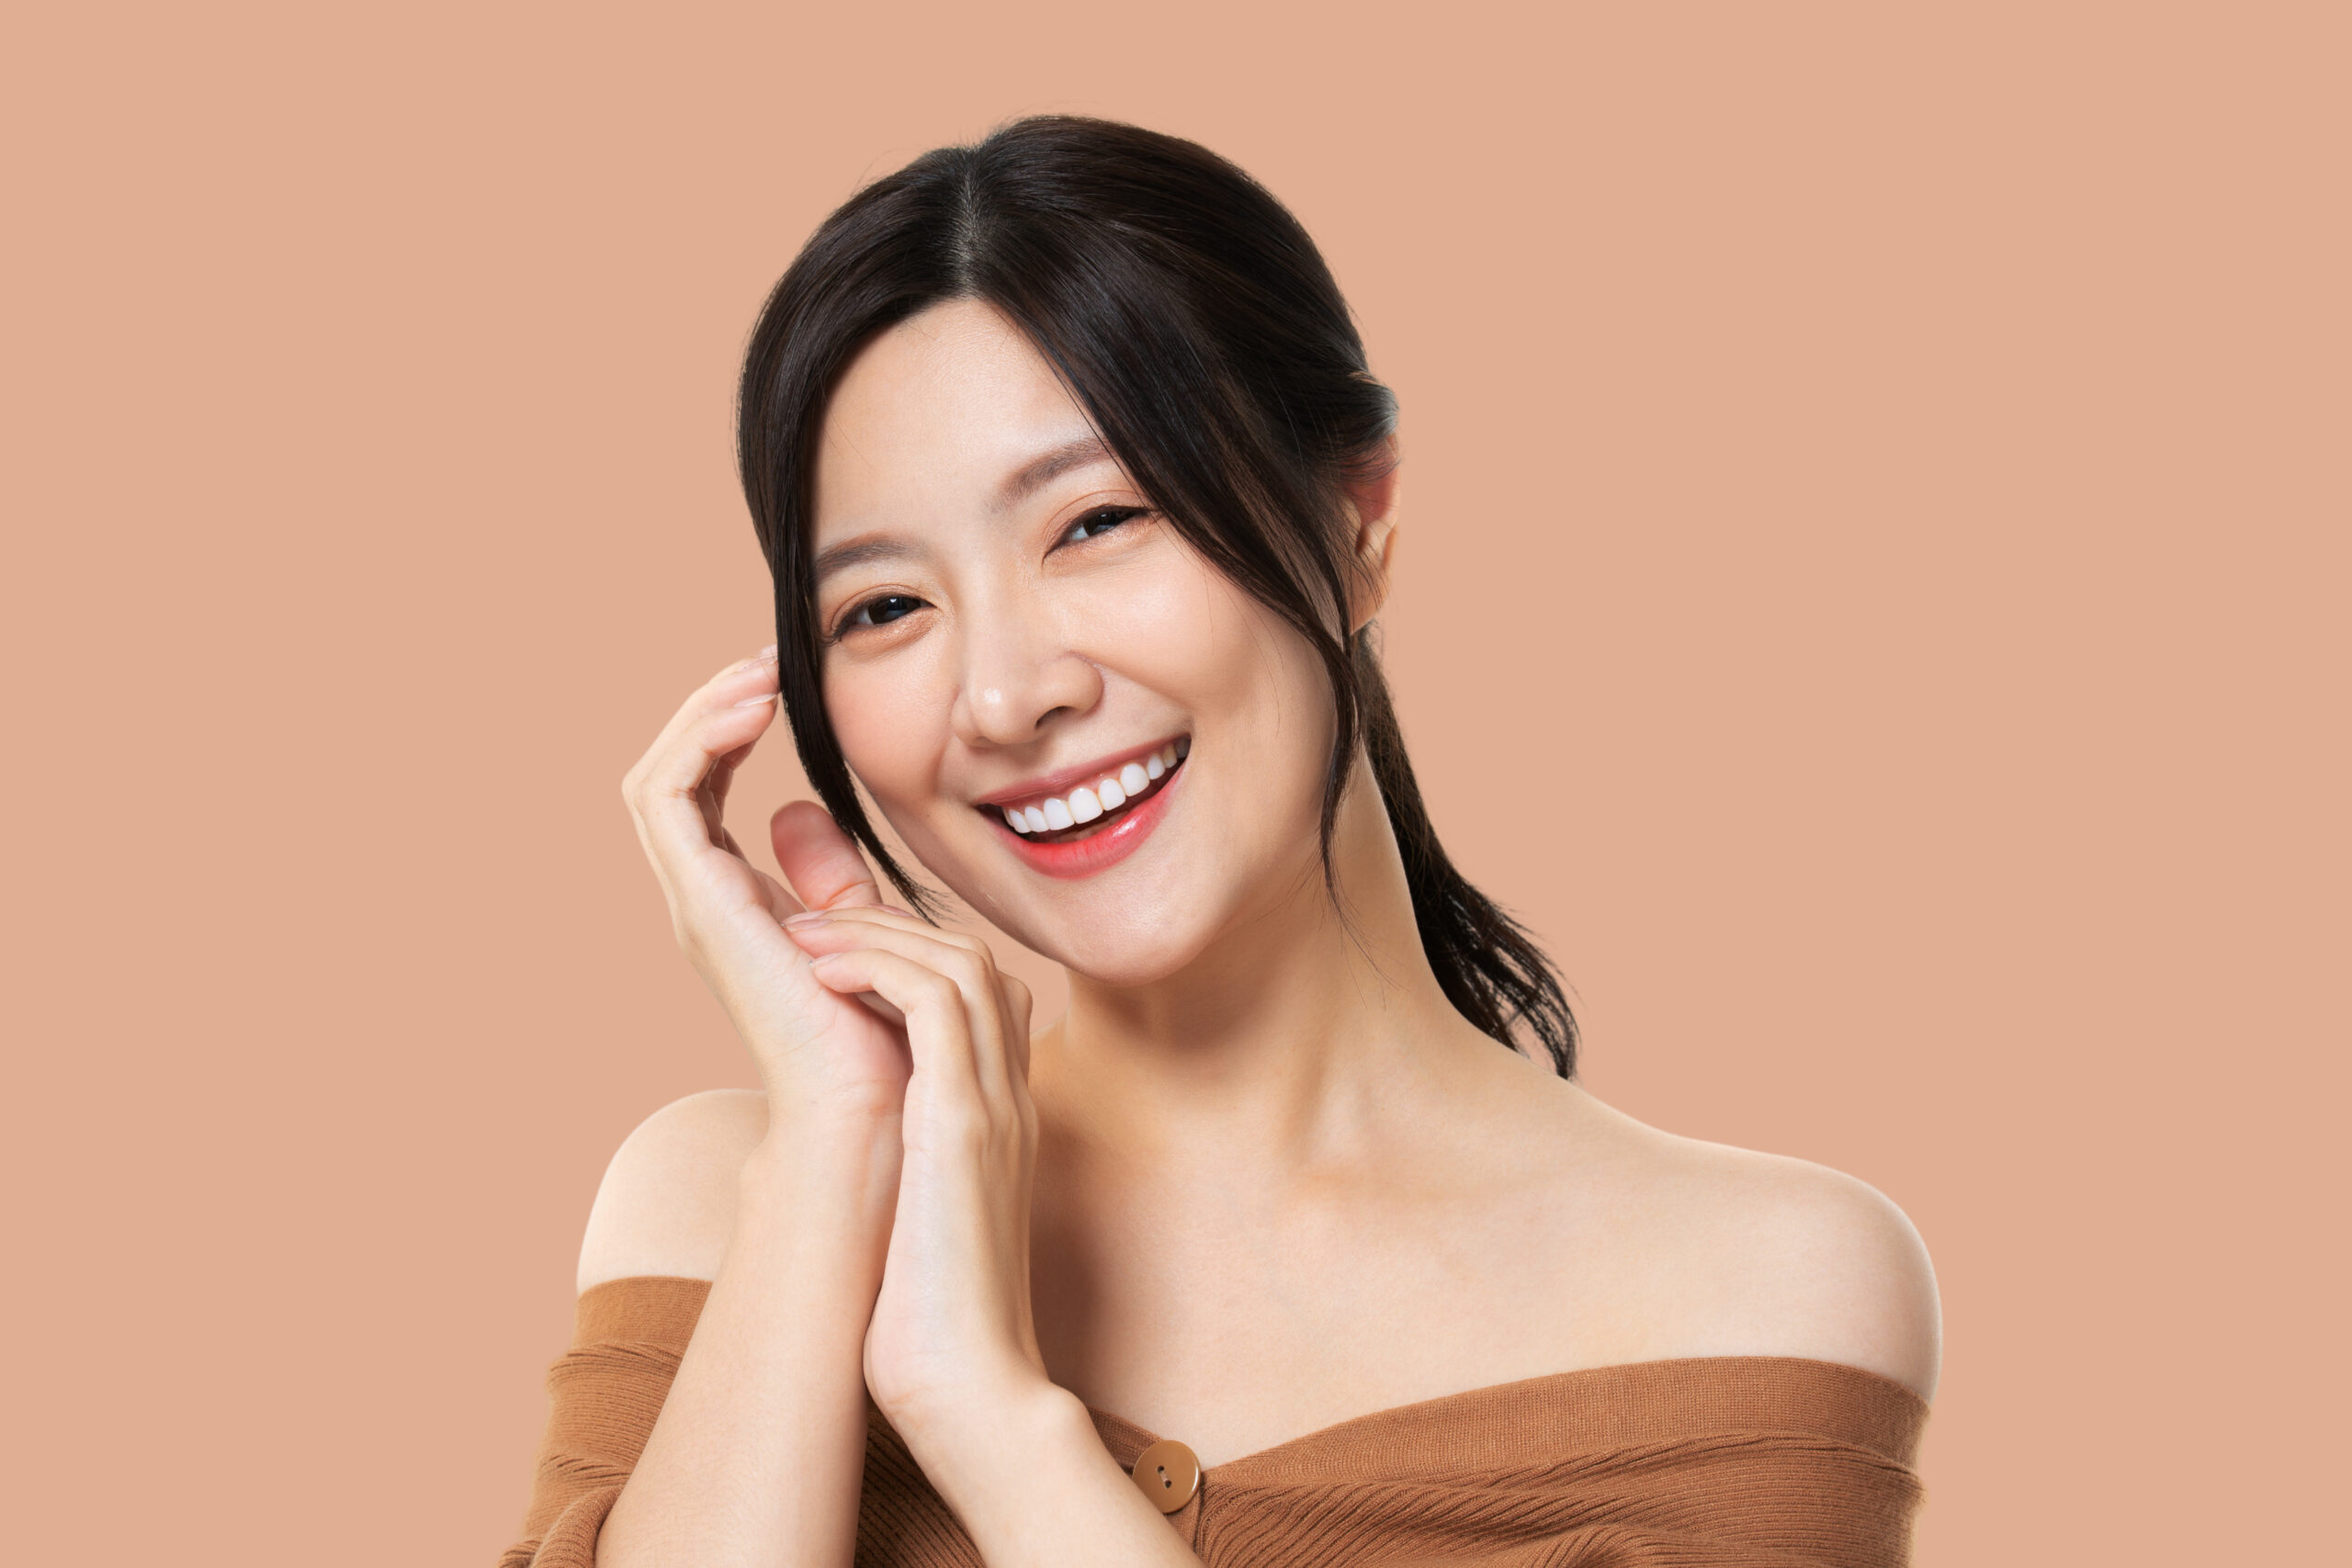 Rahasia Kecantikan Wanita Korea - Tips dan Trik Merawat Kulit Seperti Artis Korea